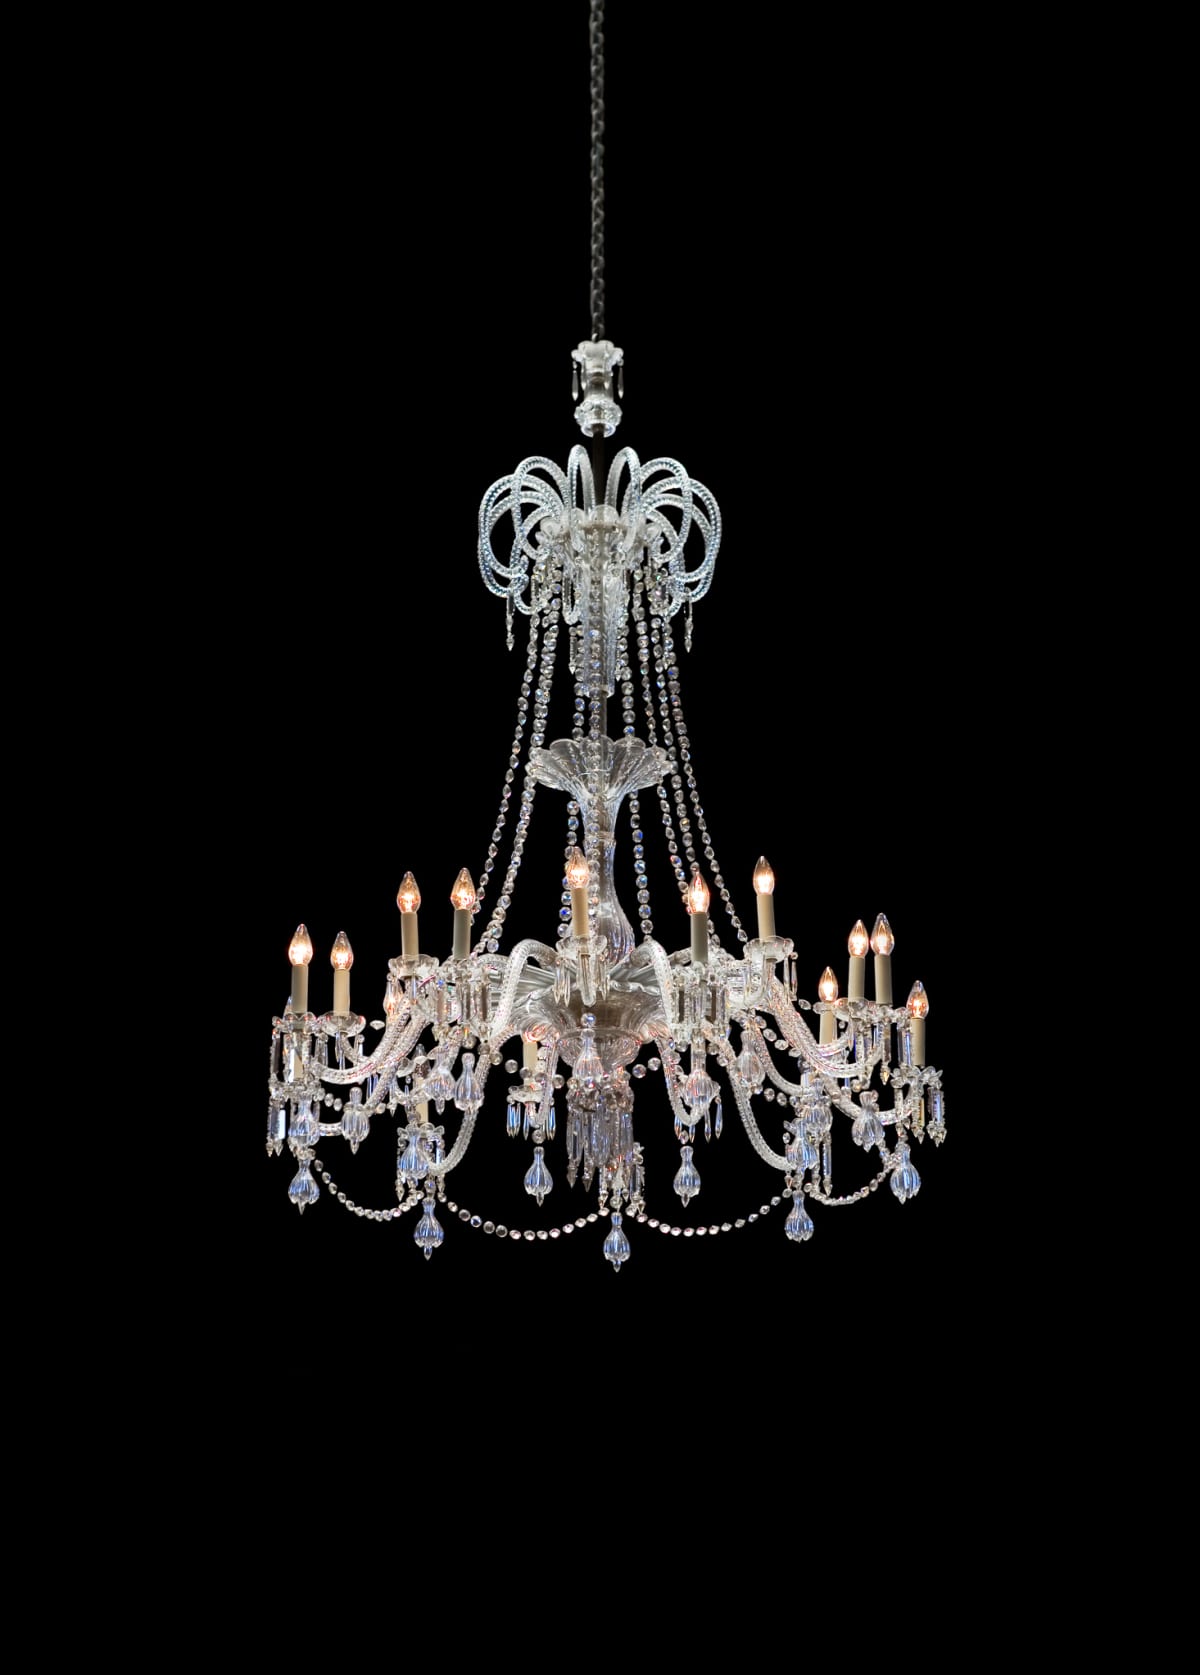 Elegant crystal chandelier on black background